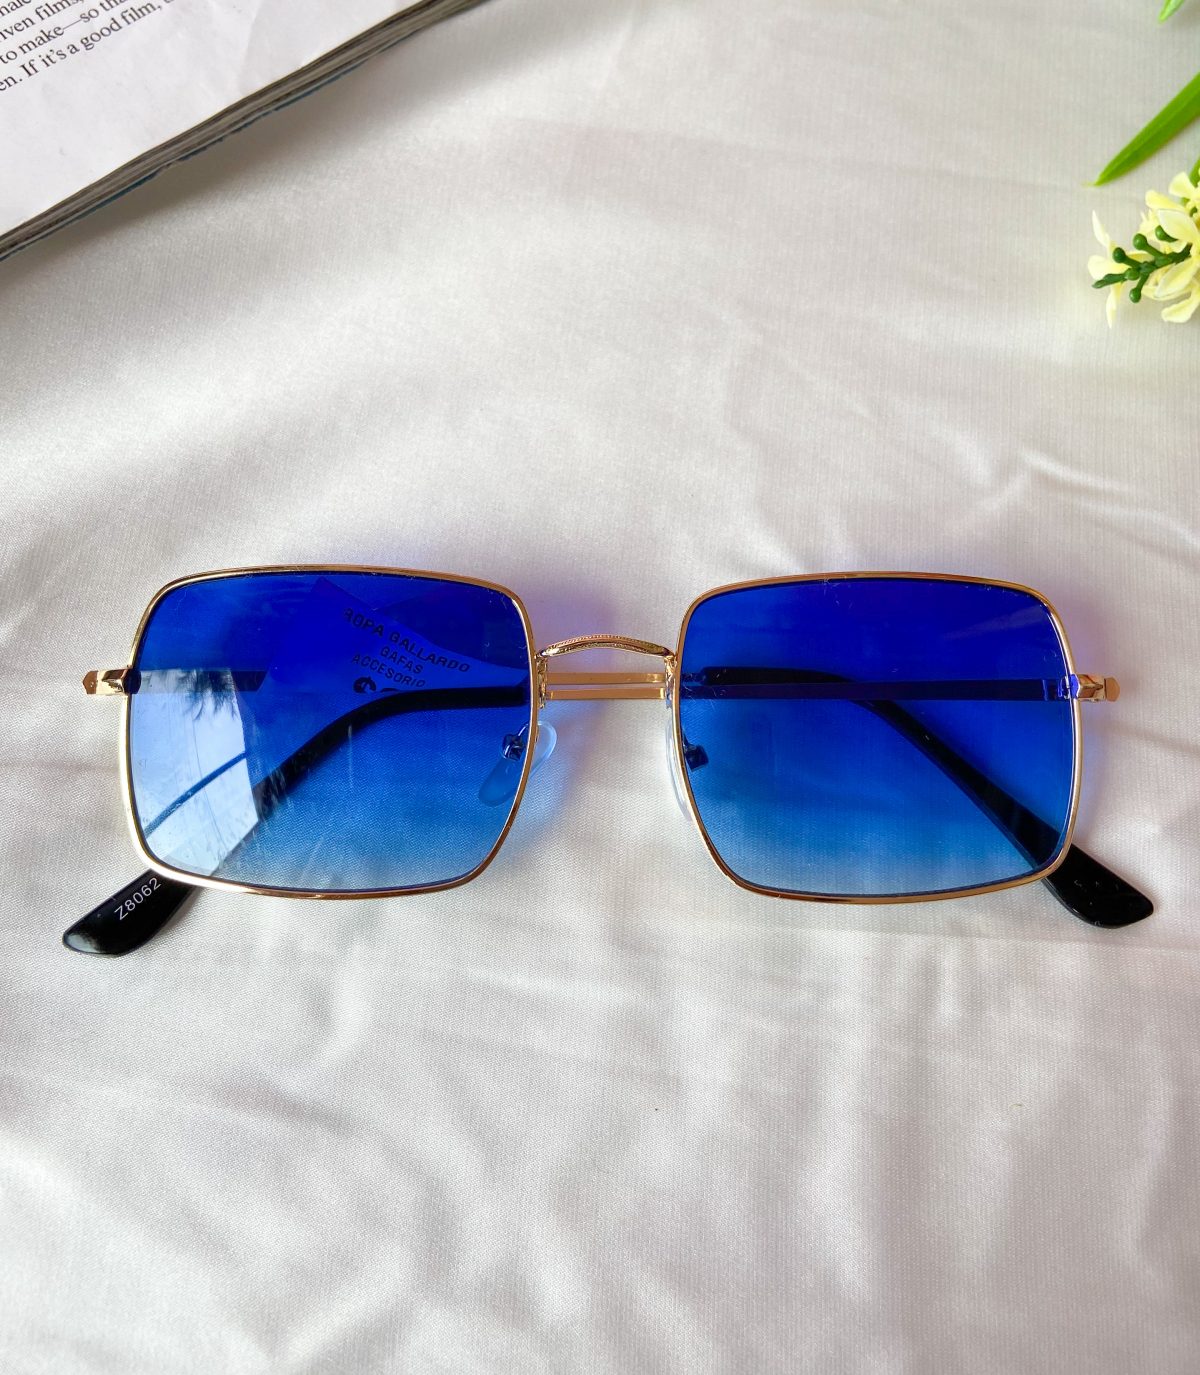 gafas celeste azul - accesorios - lentes de sol - ropa gallardo